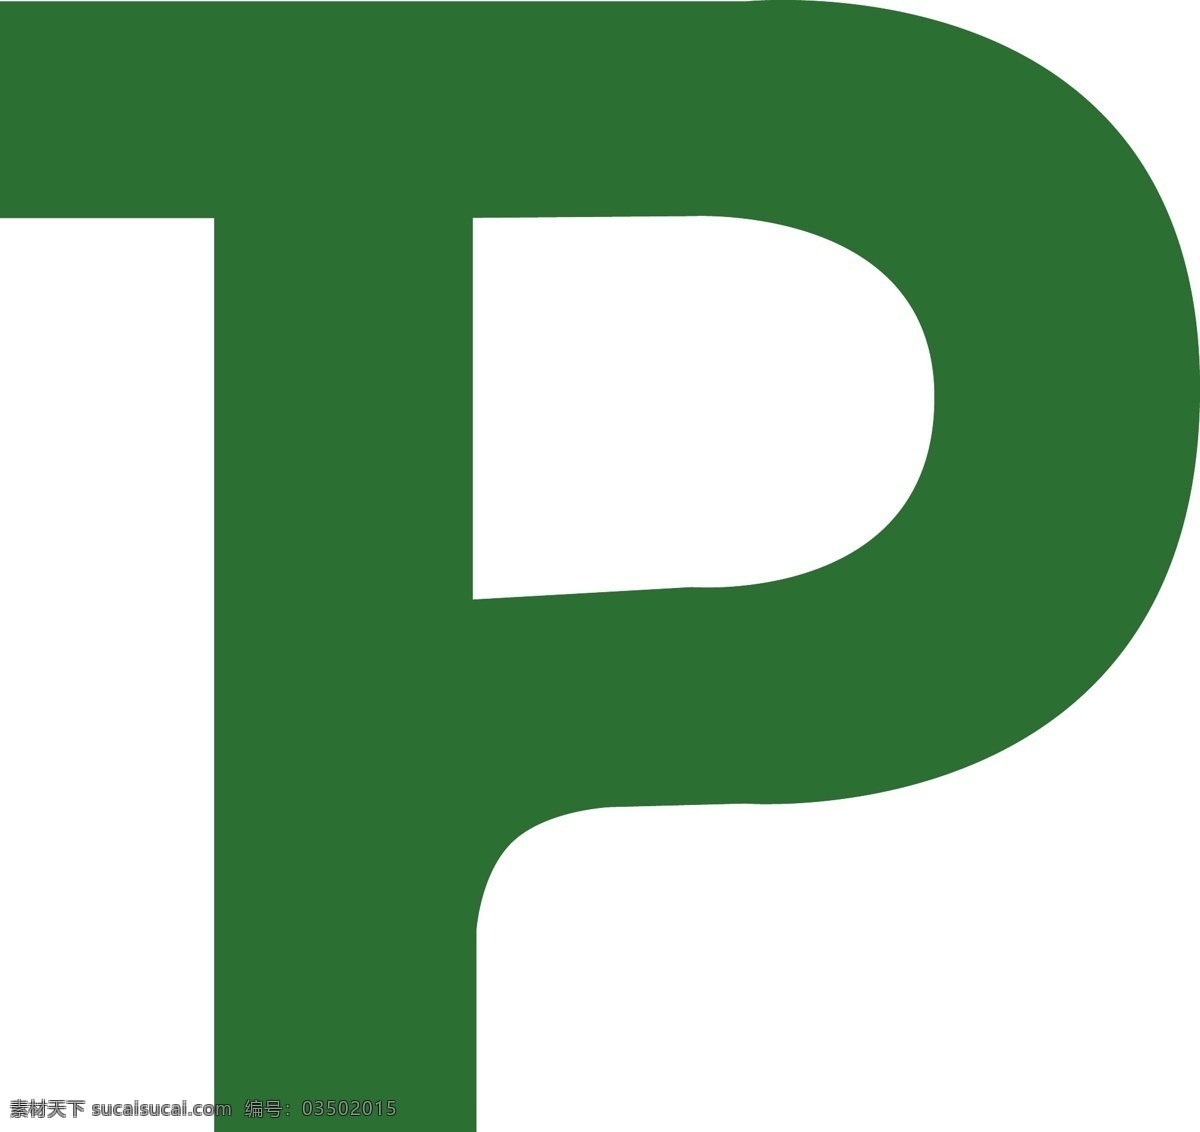 p标志 p字母 plogo p 字母标志 字母变形 logo设计